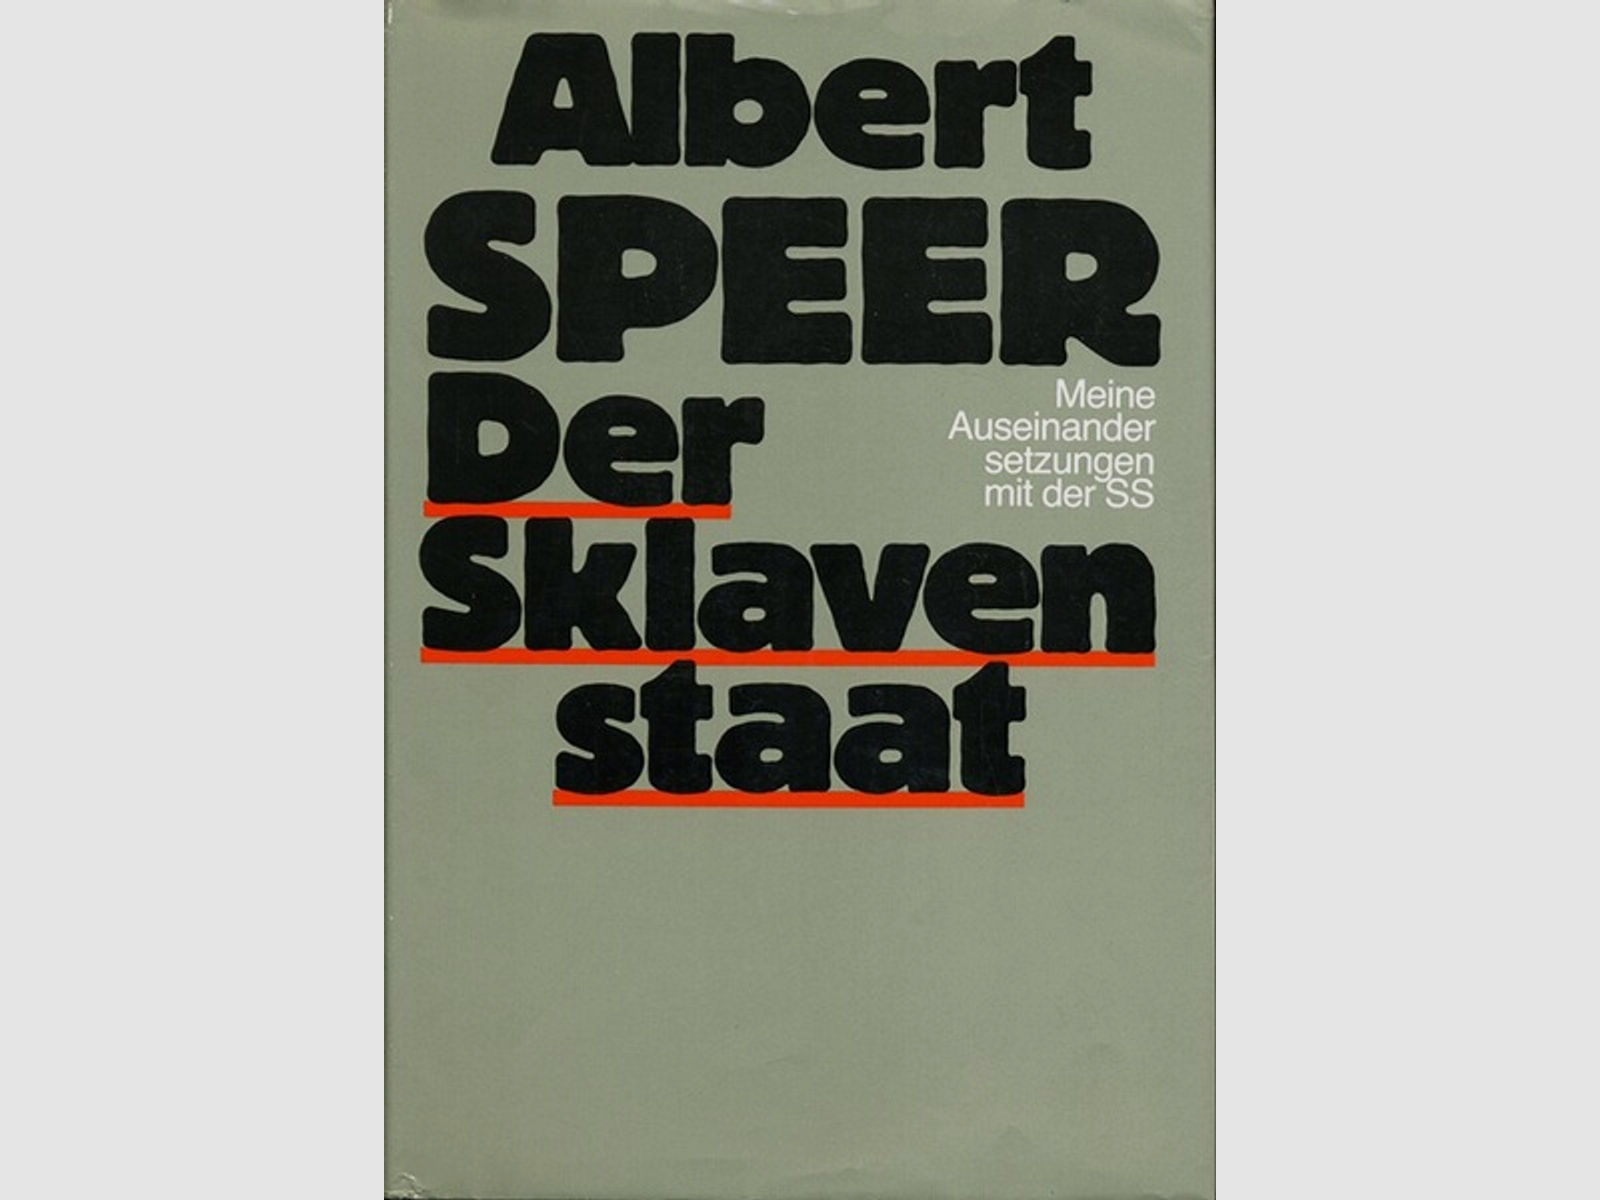 Albert Speer DER SKLAVENSTAAT